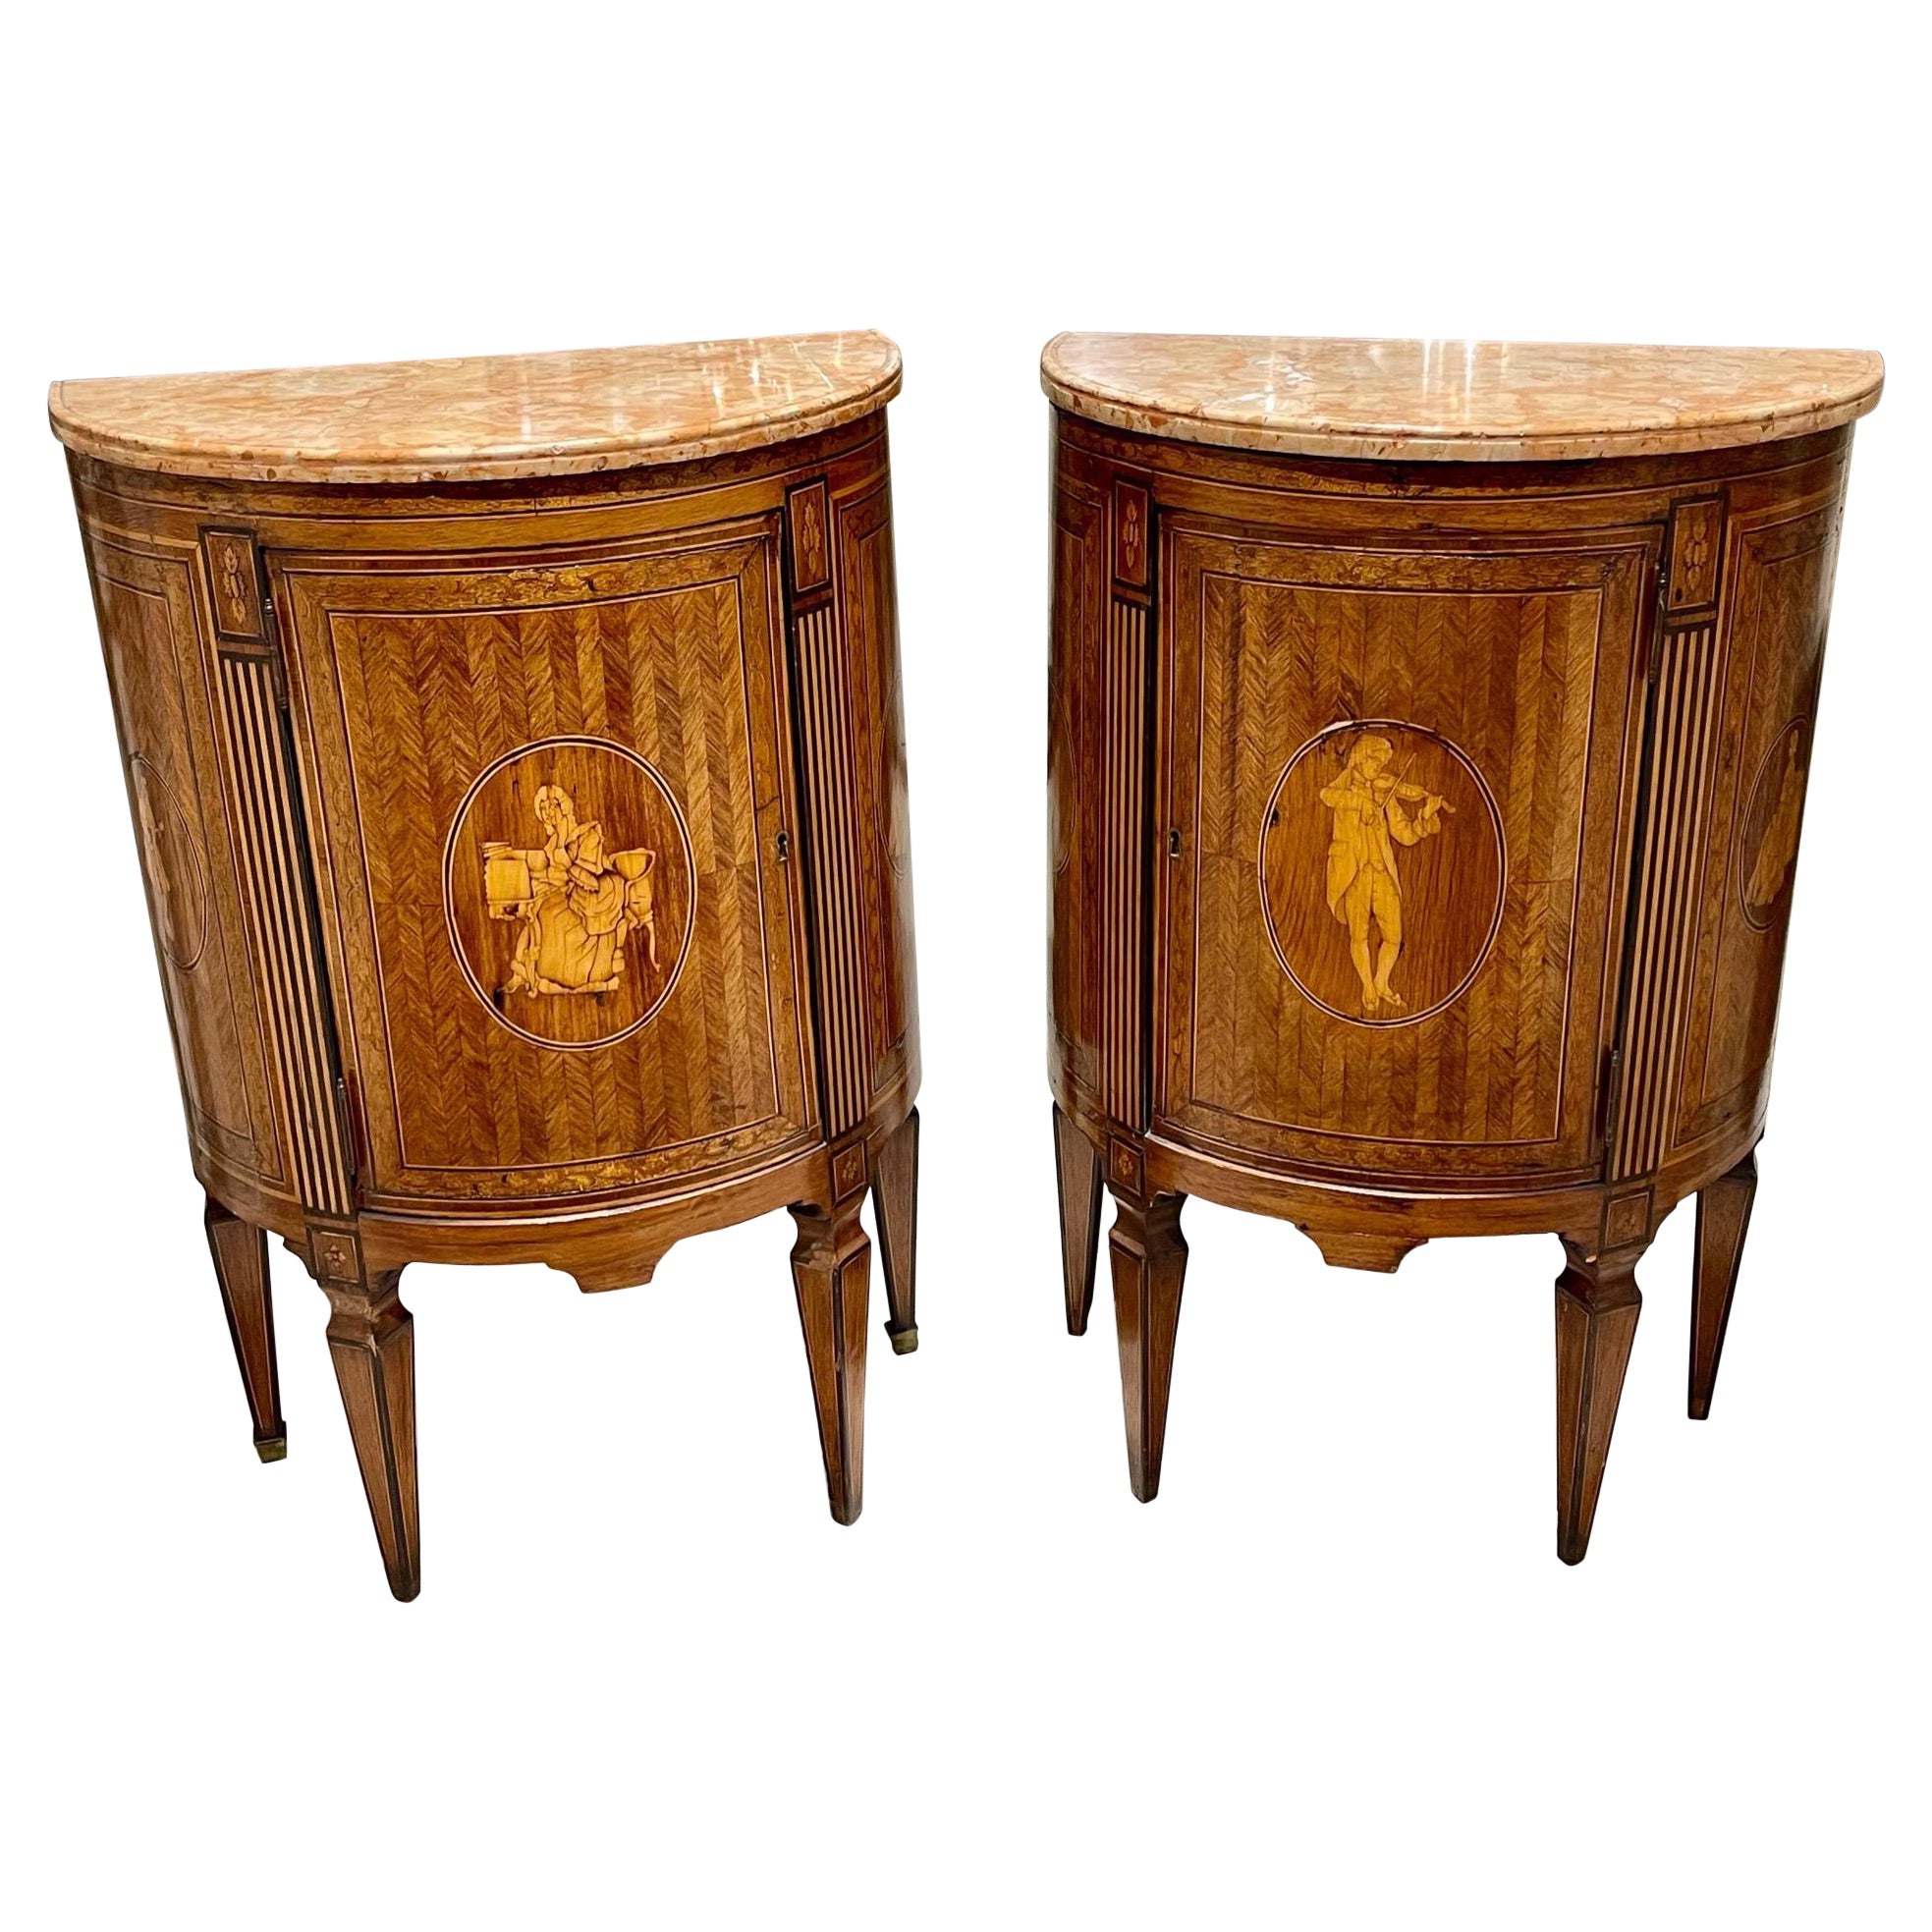 Paire de tables d'appoint incrustées néo-classiques d'Italie du Nord du 19ème siècle